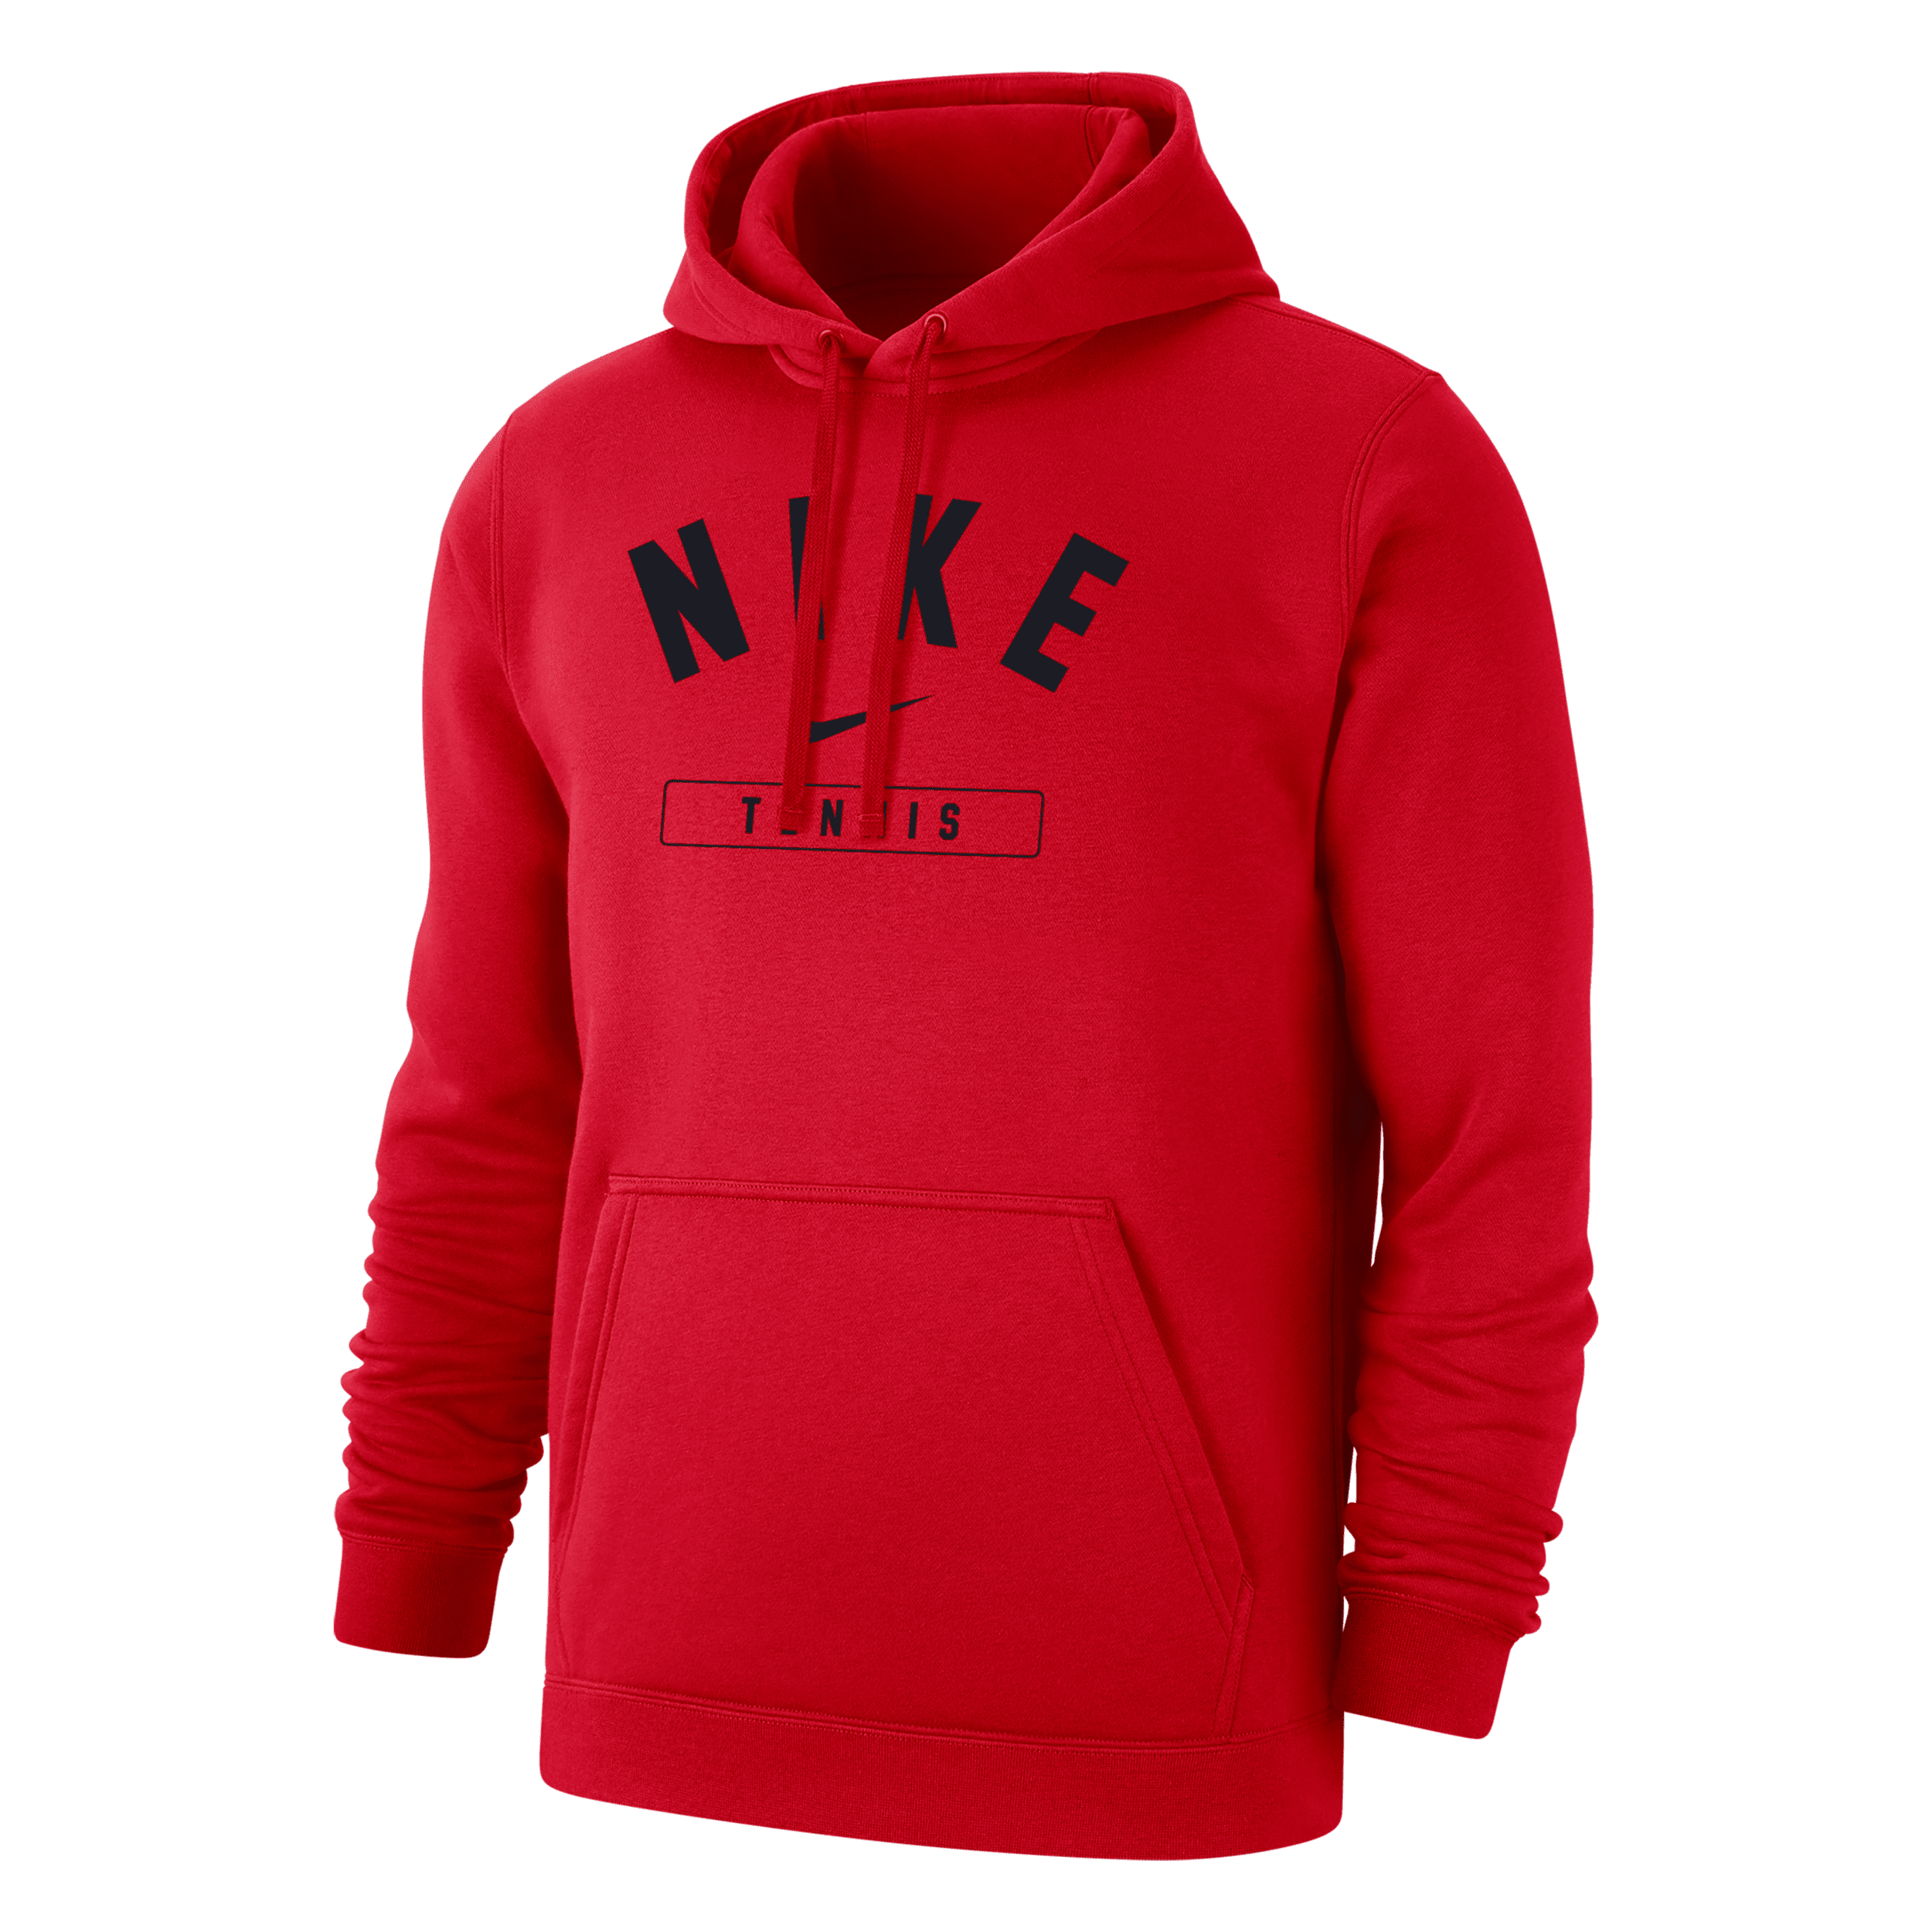 Nike Men's Tennis Pullover Hoodie In Red